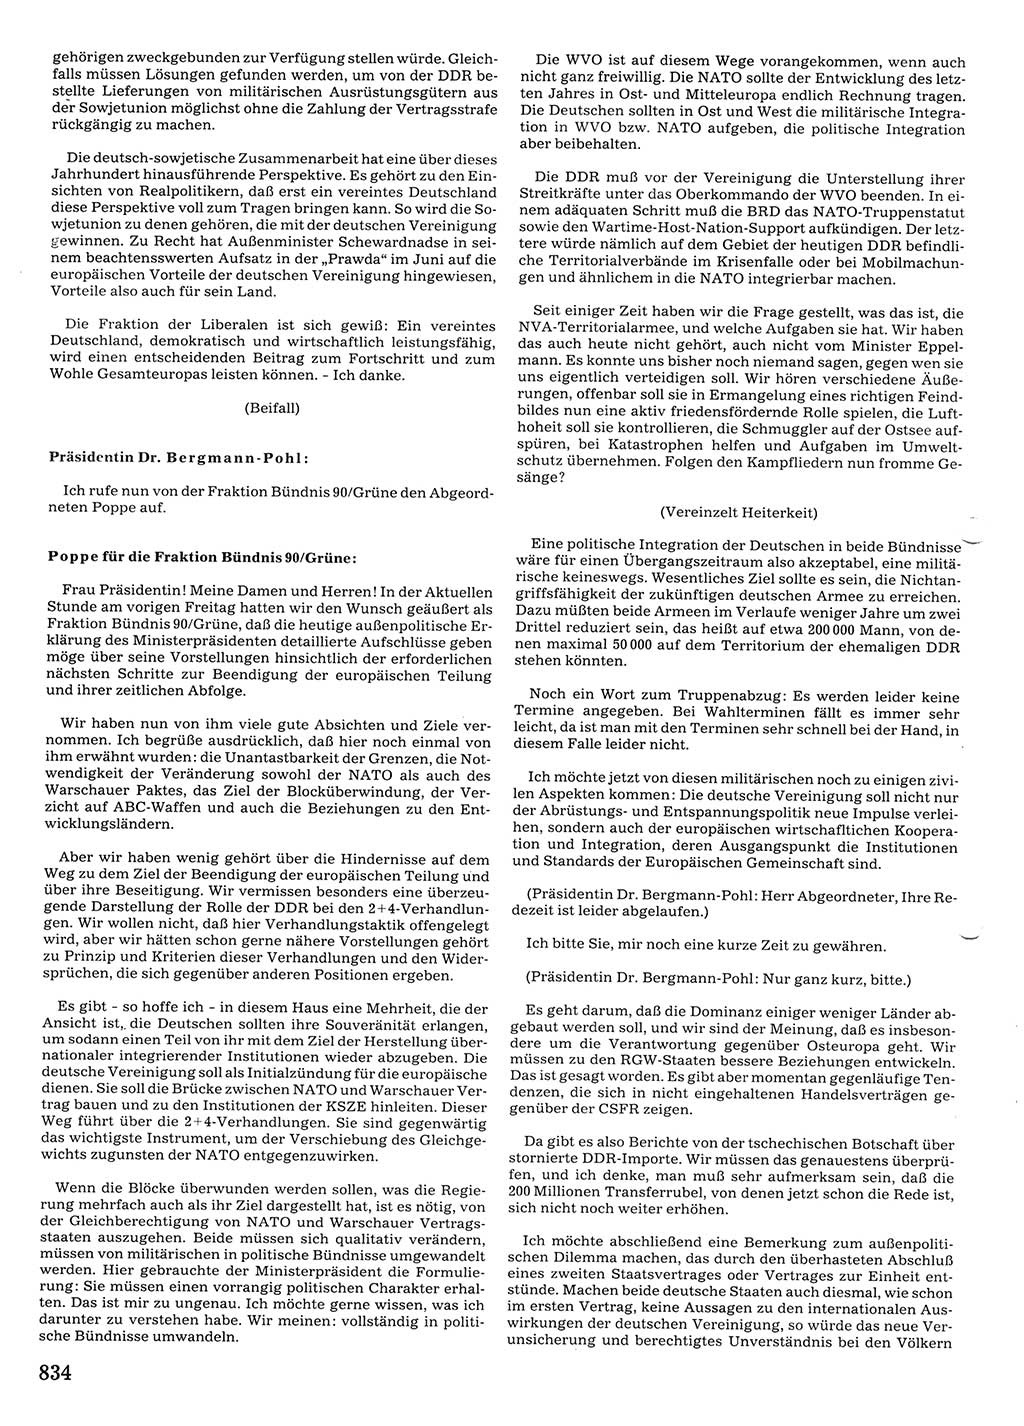 Tagungen der Volkskammer (VK) der Deutschen Demokratischen Republik (DDR), 10. Wahlperiode 1990, Seite 834 (VK. DDR 10. WP. 1990, Prot. Tg. 1-38, 5.4.-2.10.1990, S. 834)